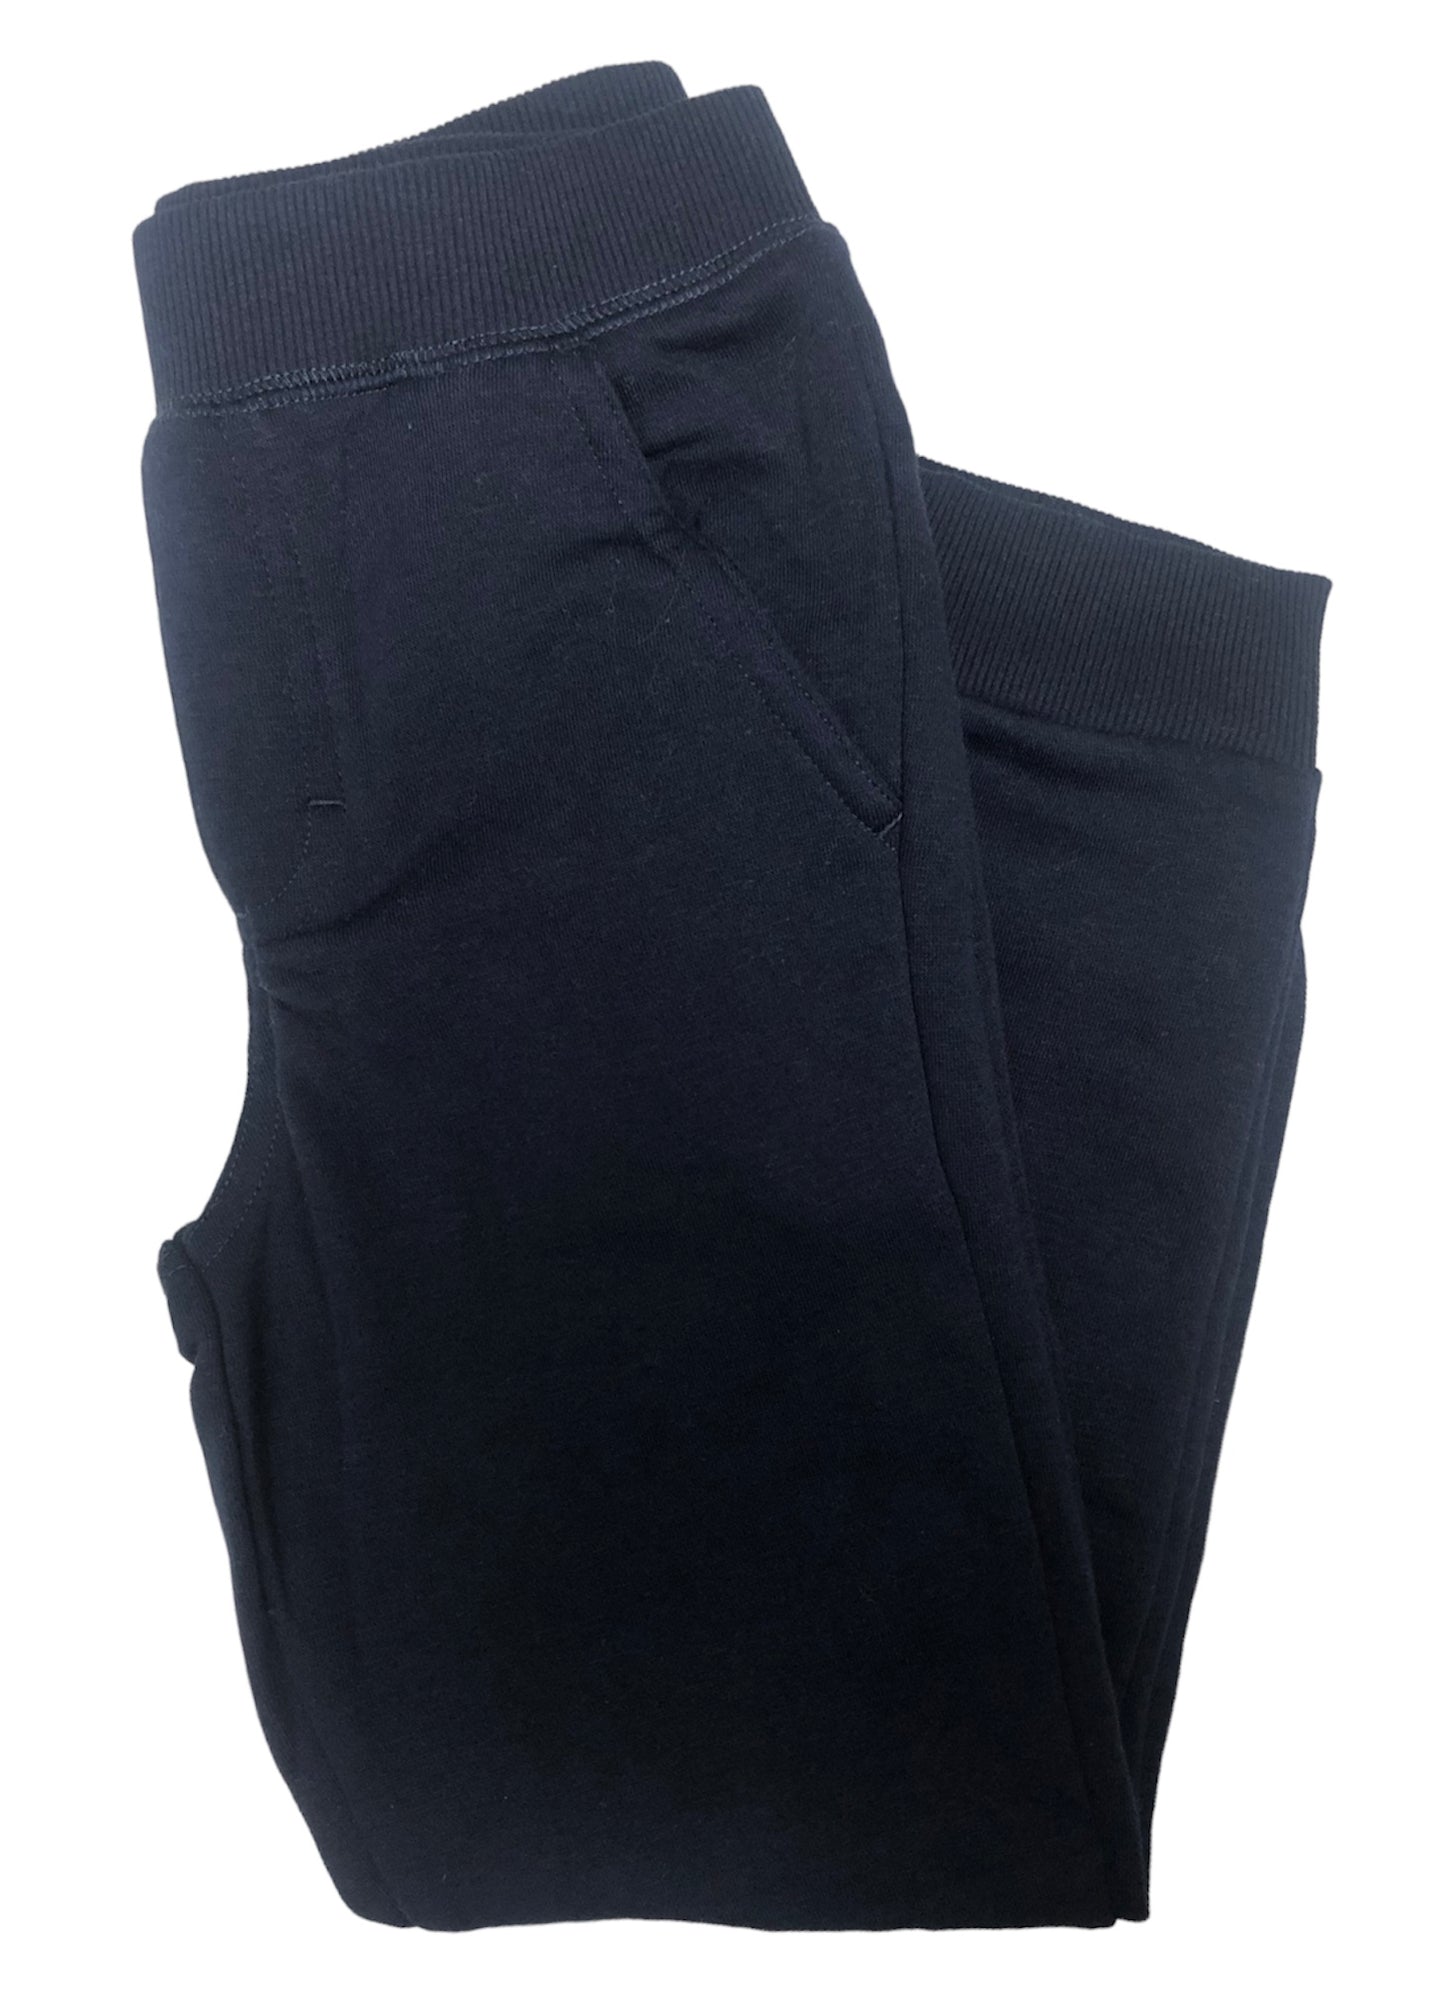 Navy Blue Sweatpants - Size 6 – Deals by Smart Sales Co.